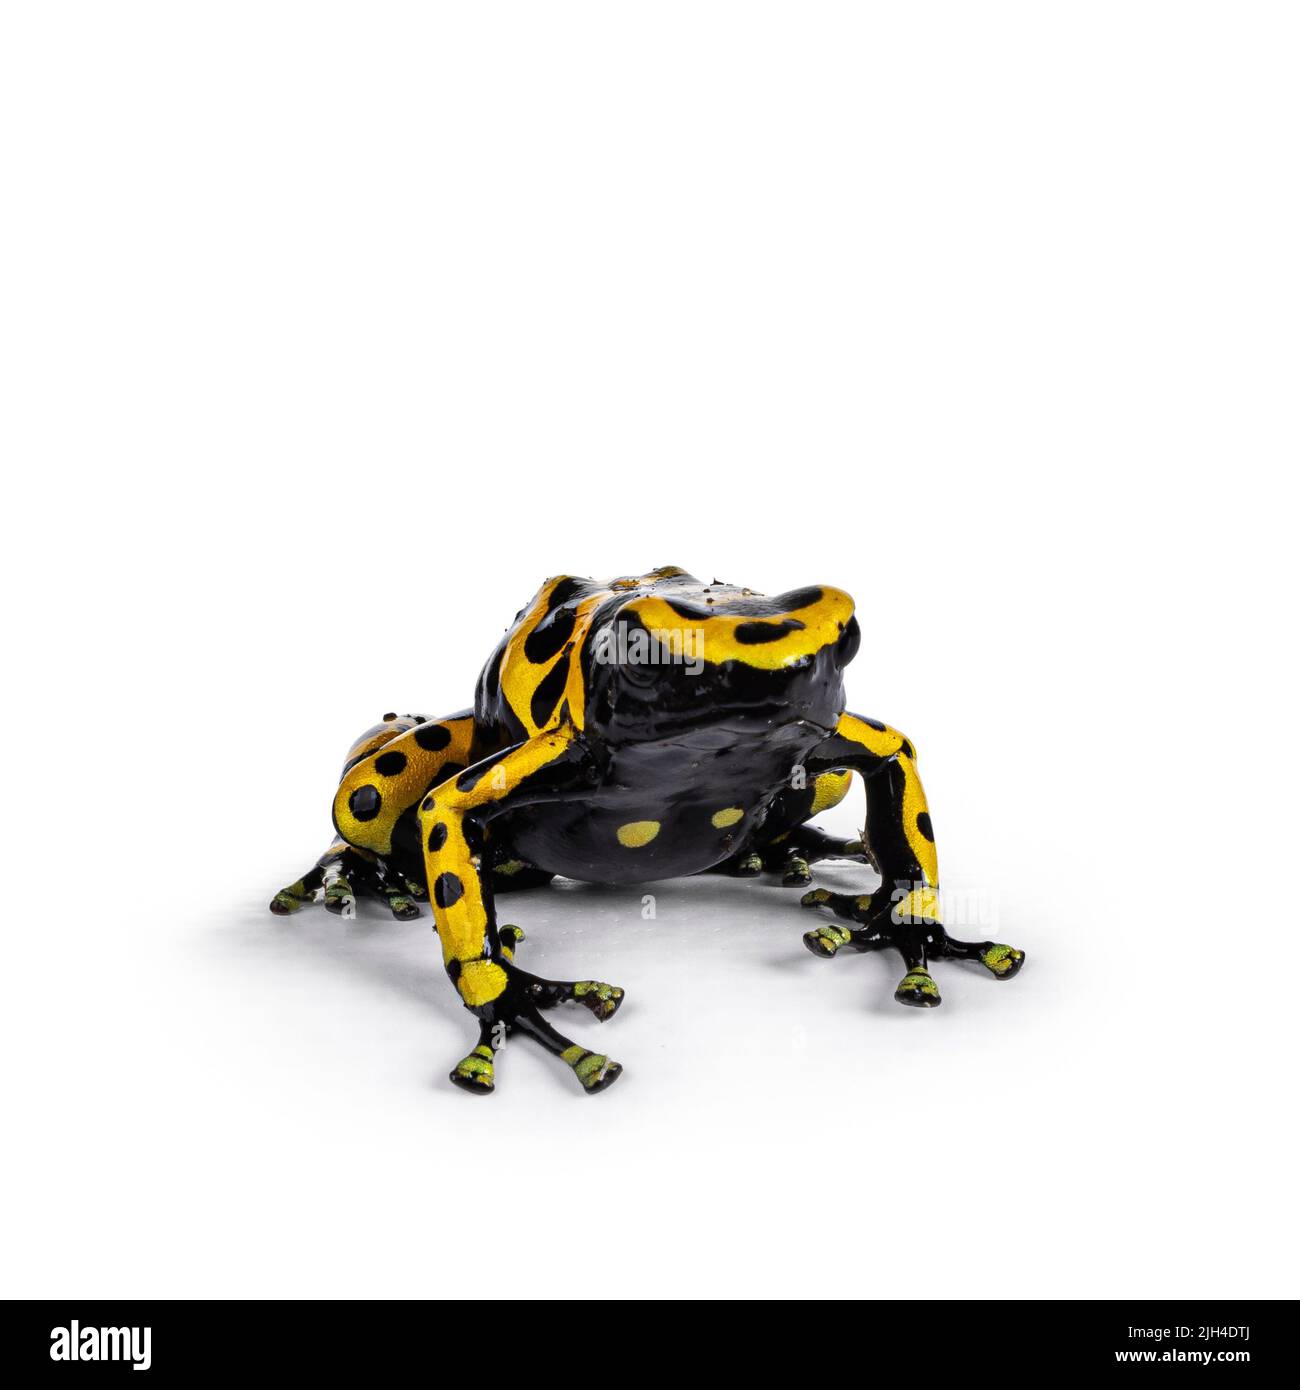 Farbenprächtiger, gelber Dart Frosch, auch bekannt als Dendrobates leucomelas, der wie eine kleine Bulldogge nach vorne zeigt. Isoliert auf weißem Hintergrund. Stockfoto